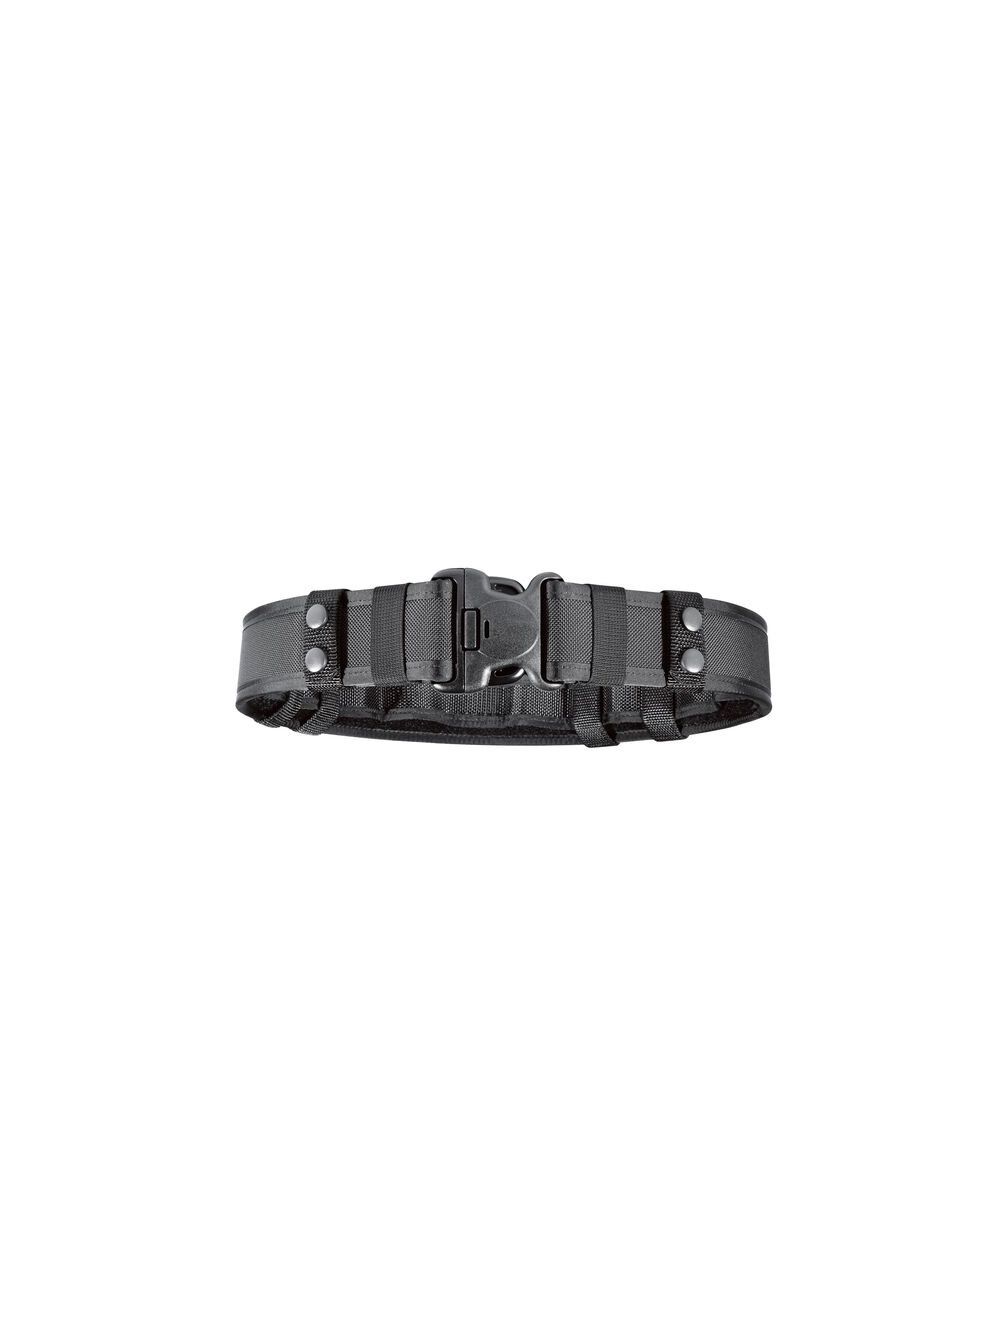 Model 7235 Duty Belt System 2.25 (58mm)